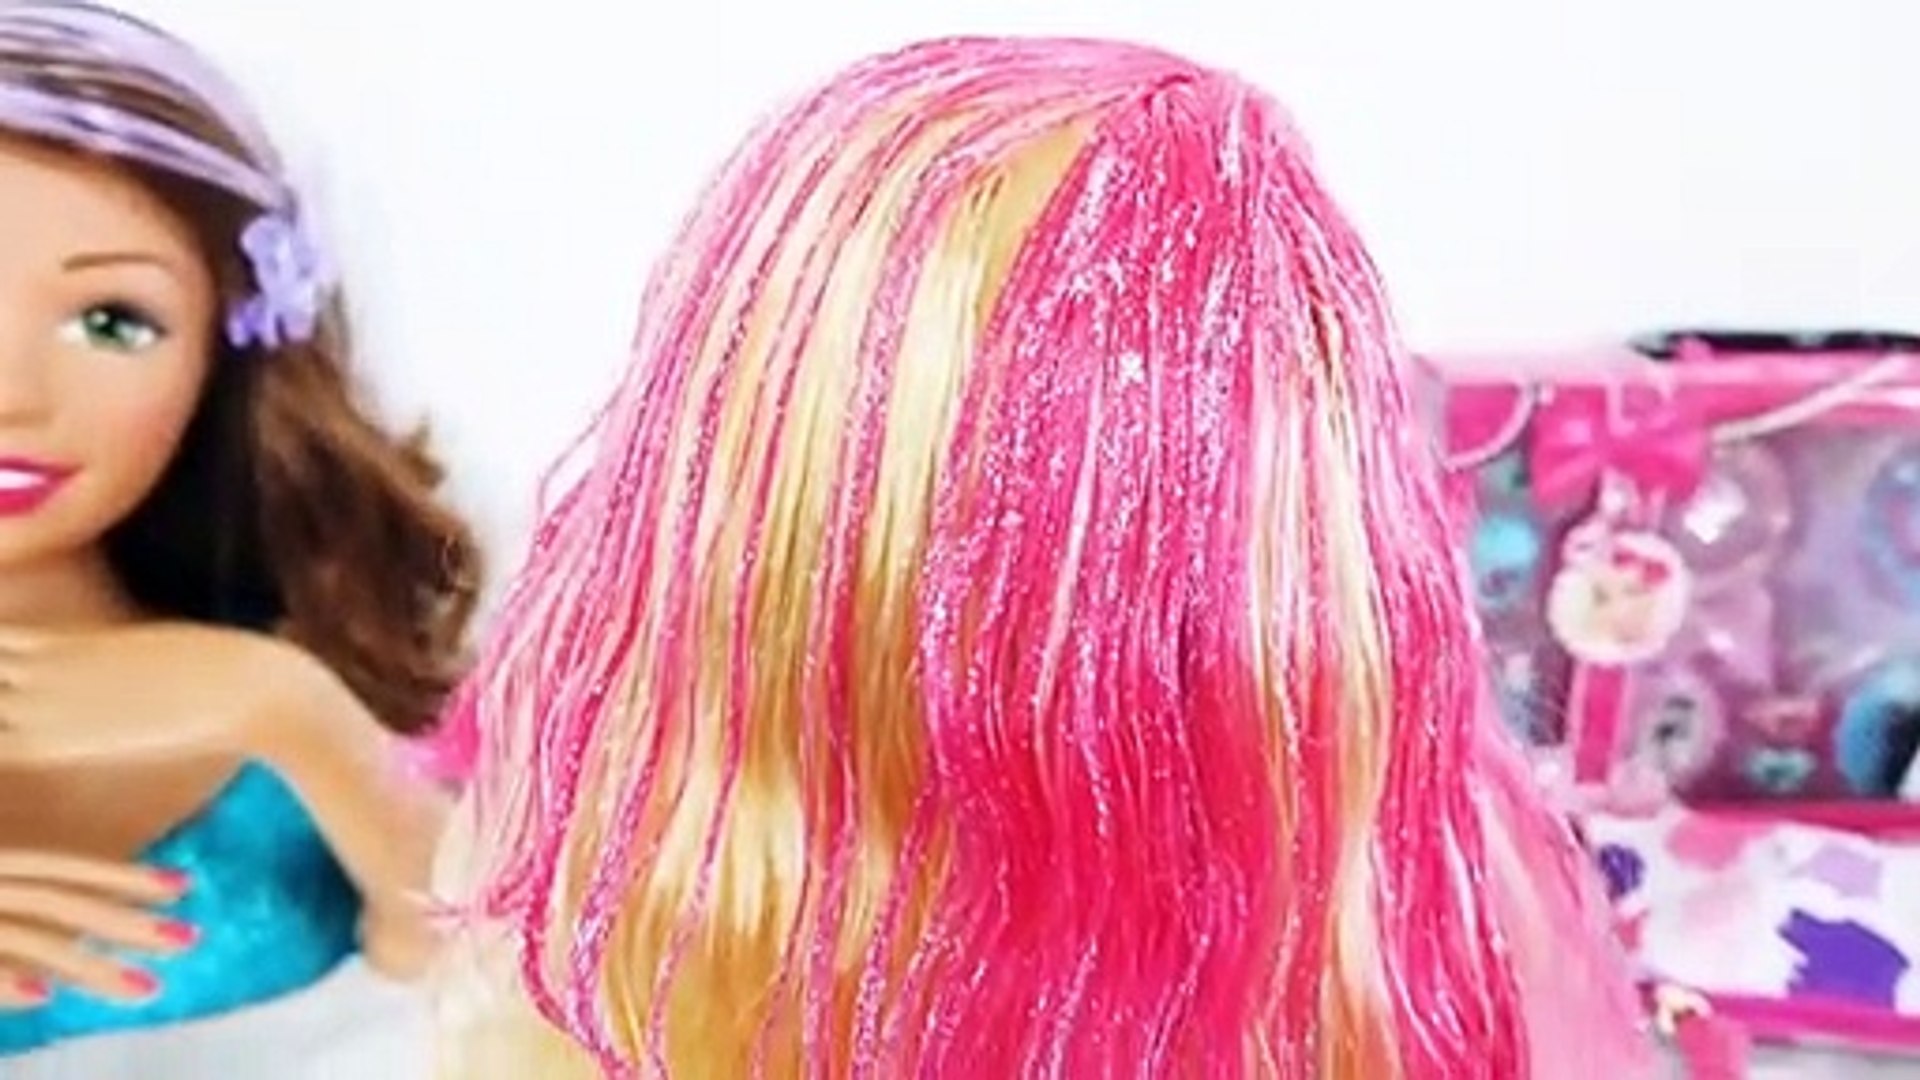 Barbie CORTA CABELO e faz MAQUIAGEM DE VERDADE no Salão de Beleza! Salon  HairCut Real Make 